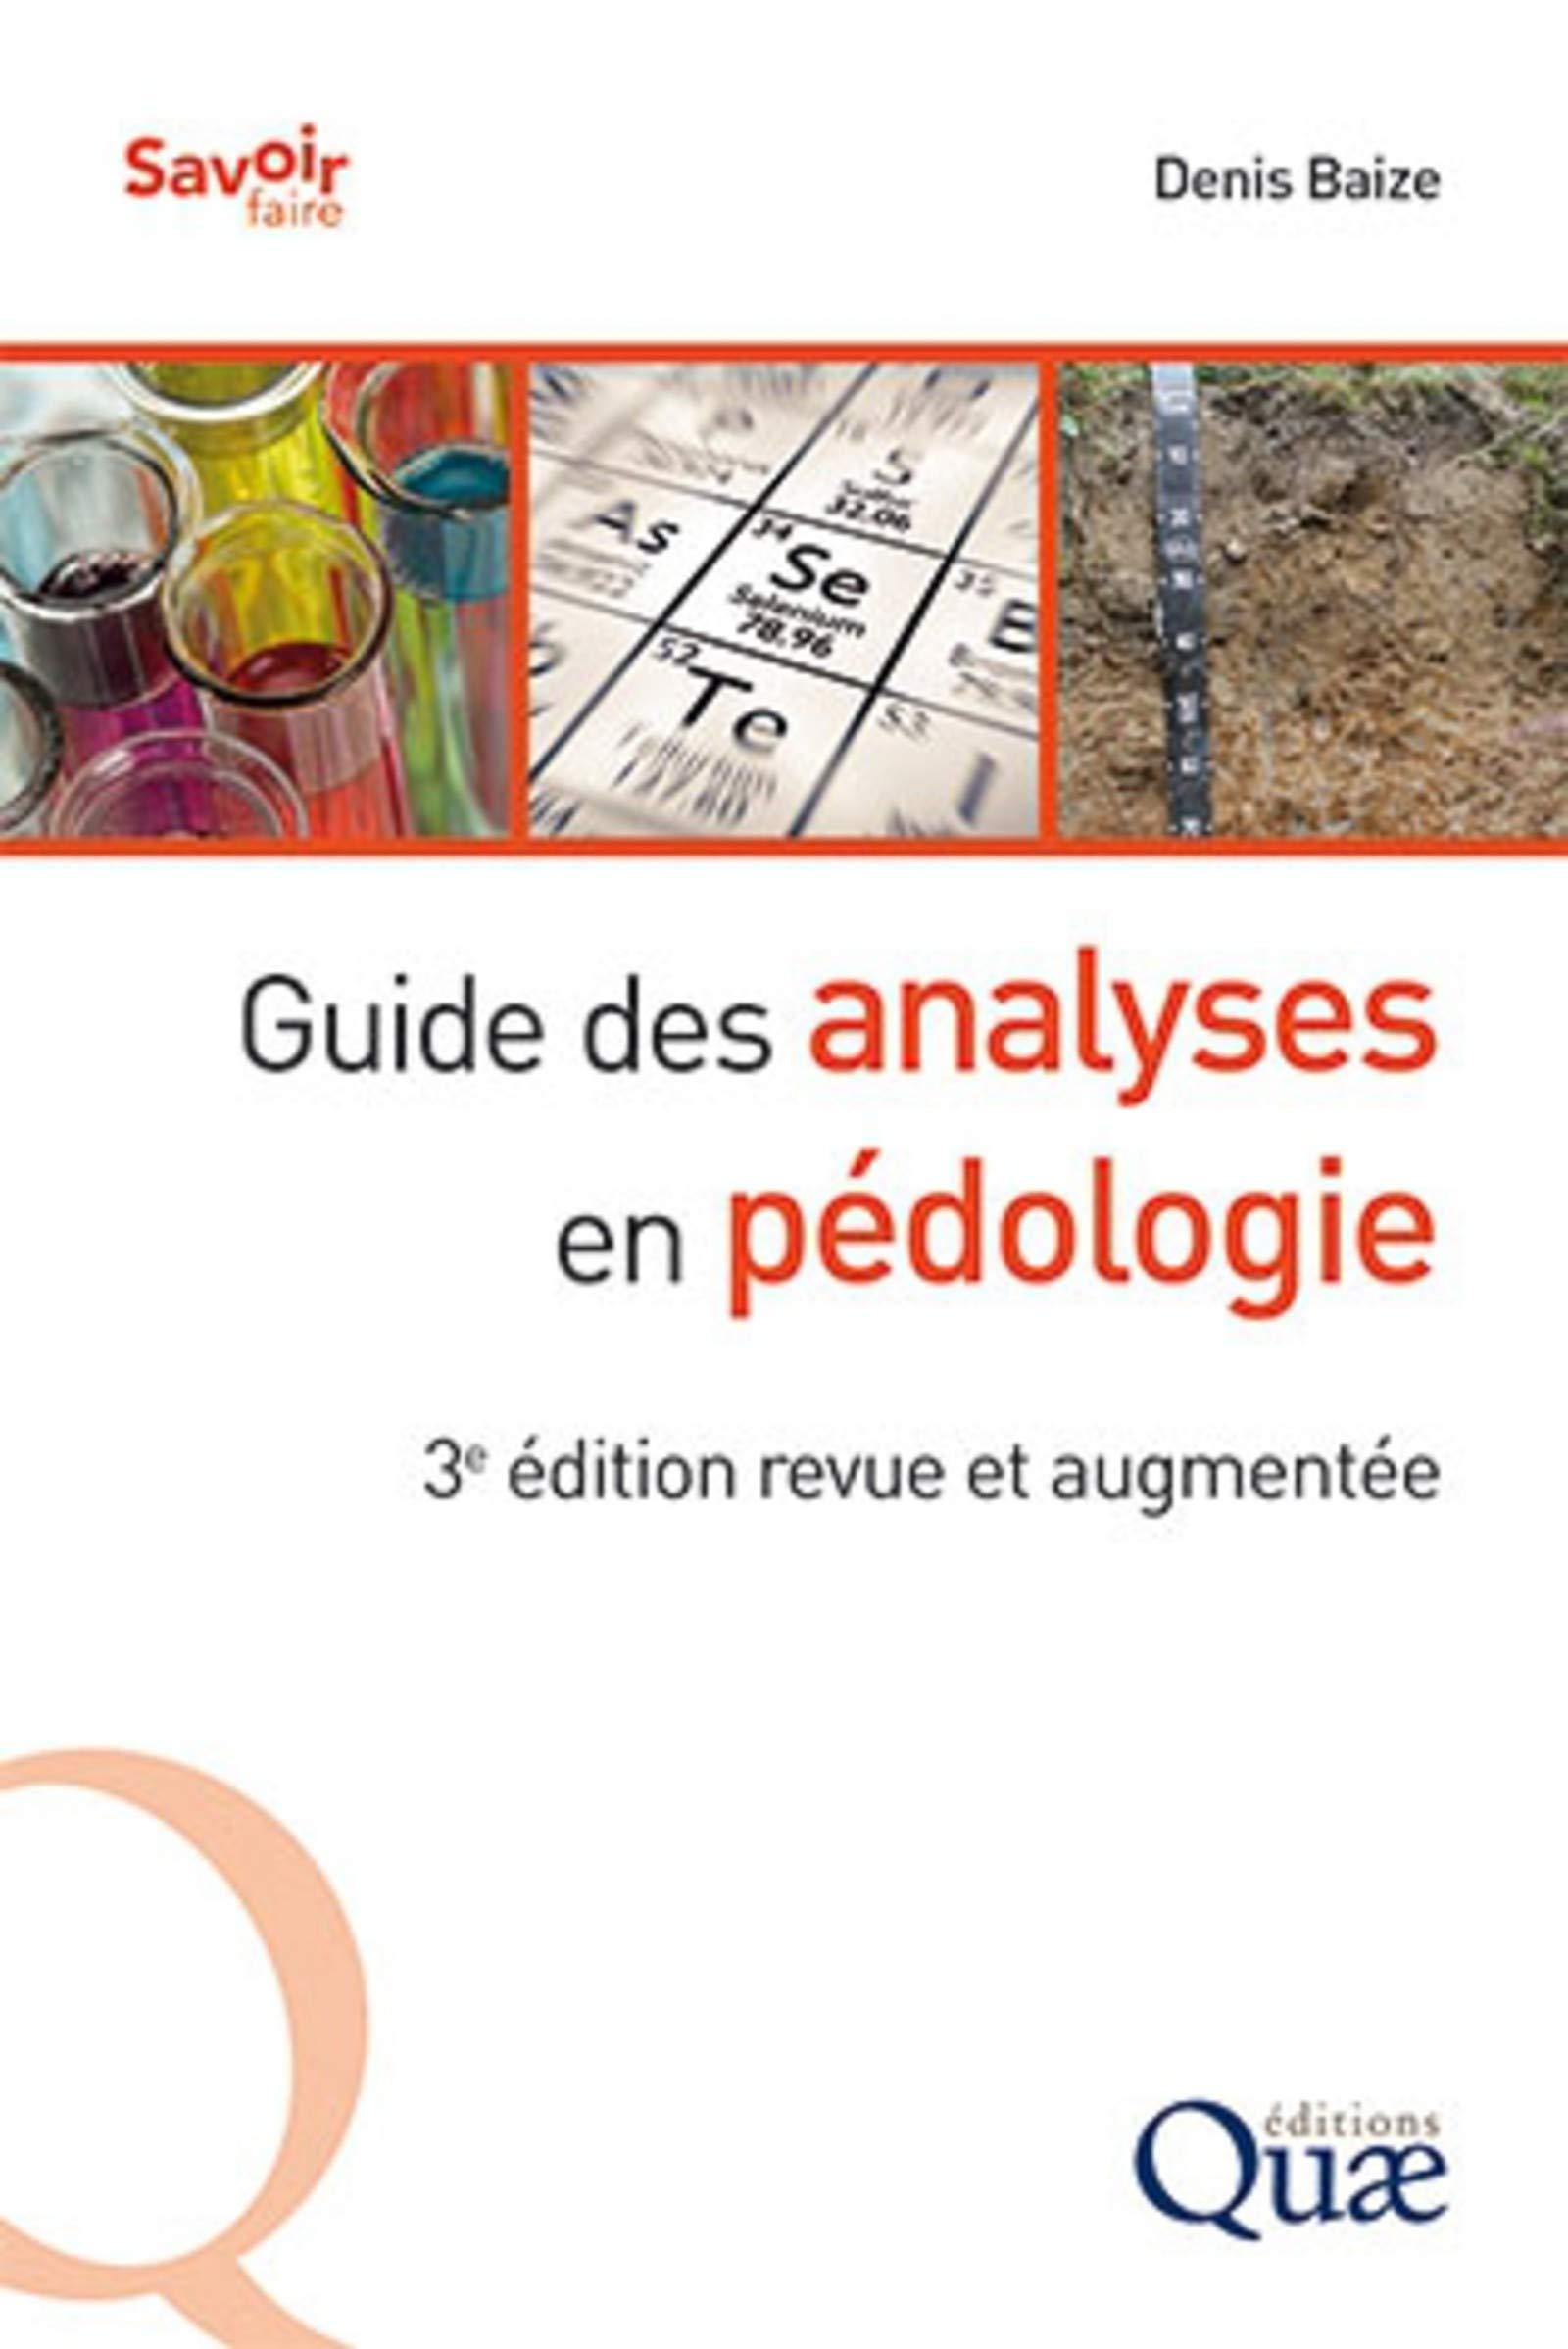 Guide des analyses en pédologie. Choix - expression - présentation - interprétation, 2018, 3e édition revue et augmentée, 326 p.